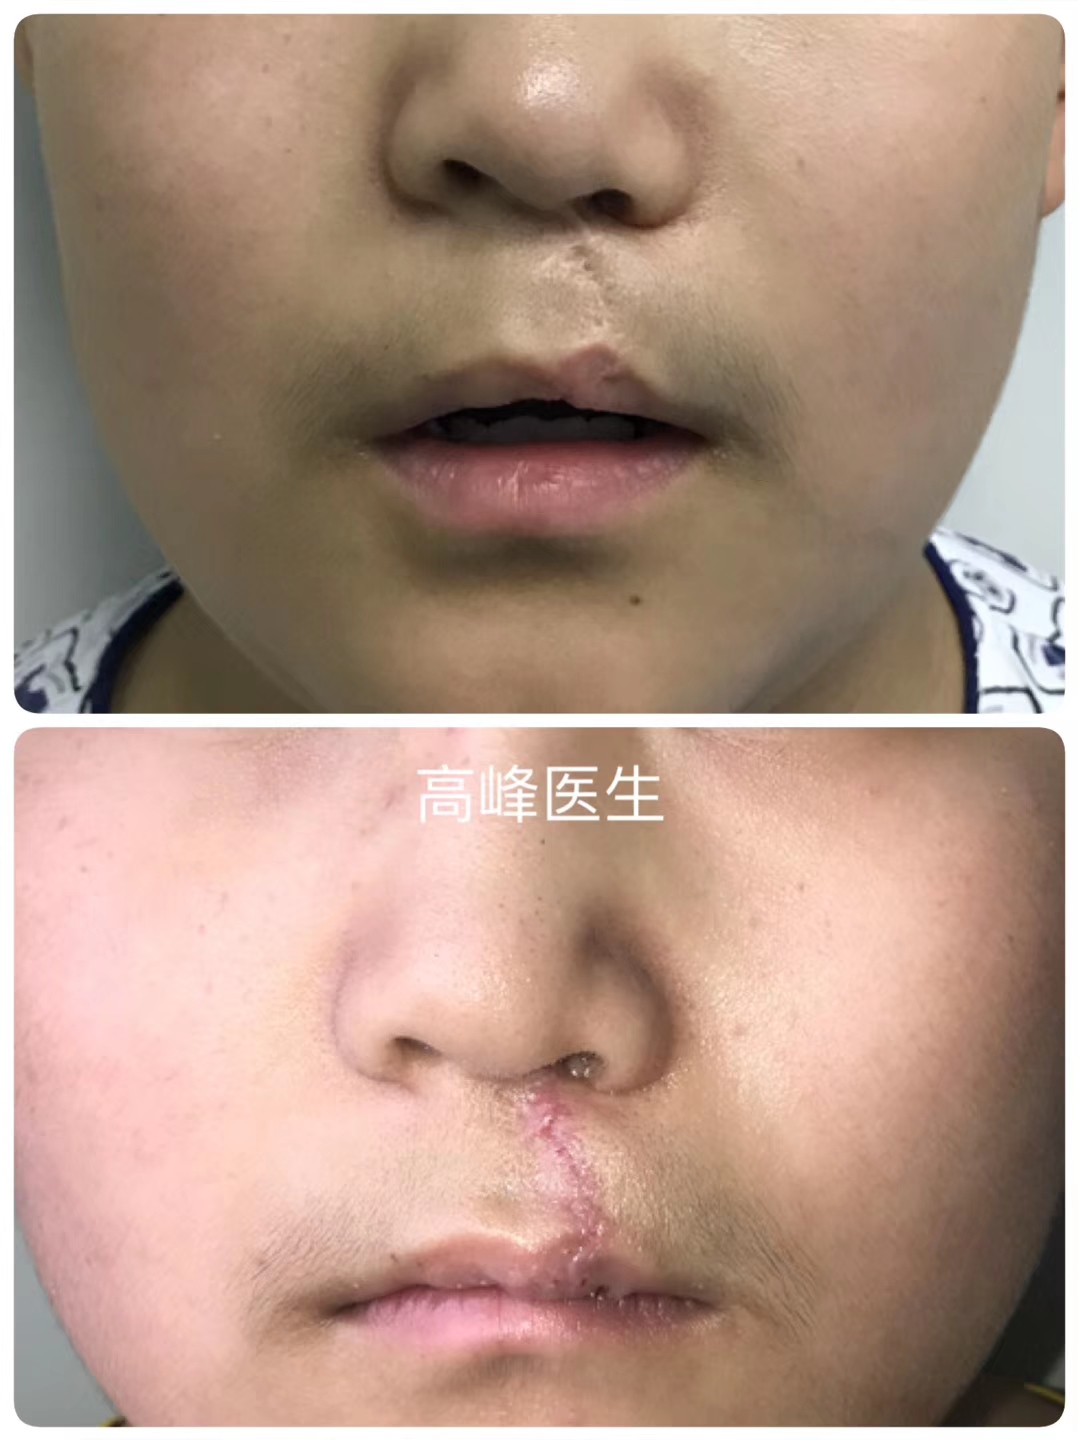 唇裂术后疤痕变化过程图片